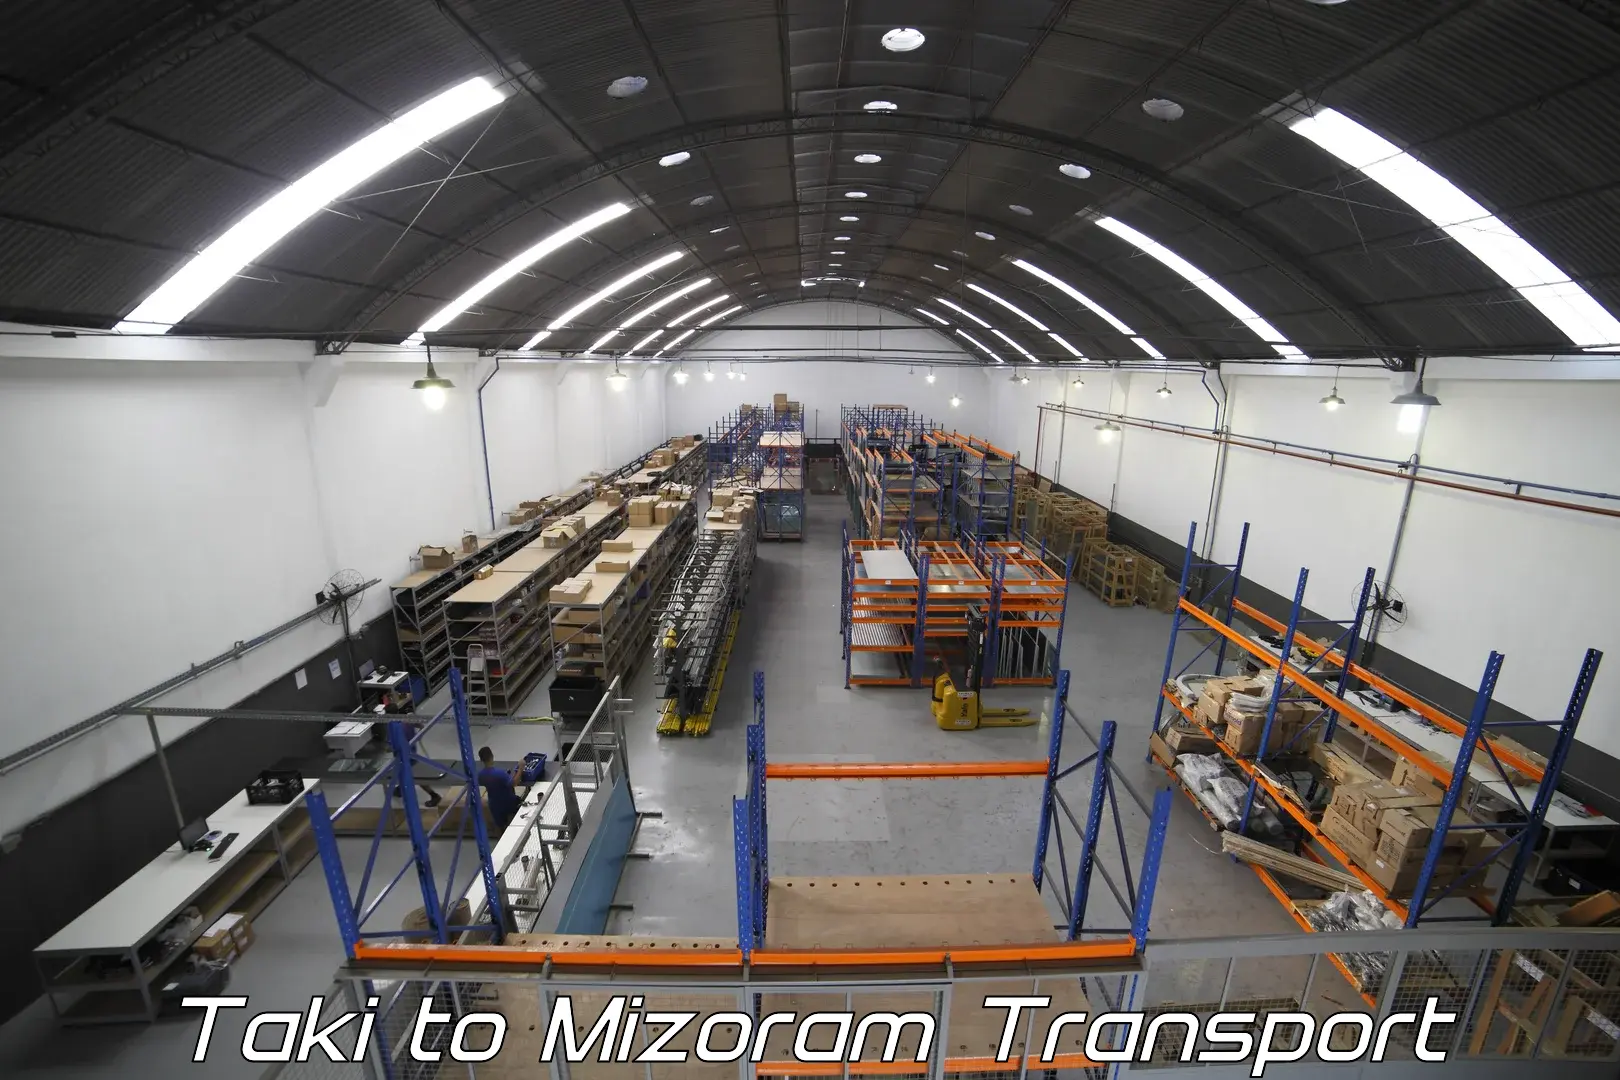 Intercity goods transport in Taki to Mizoram